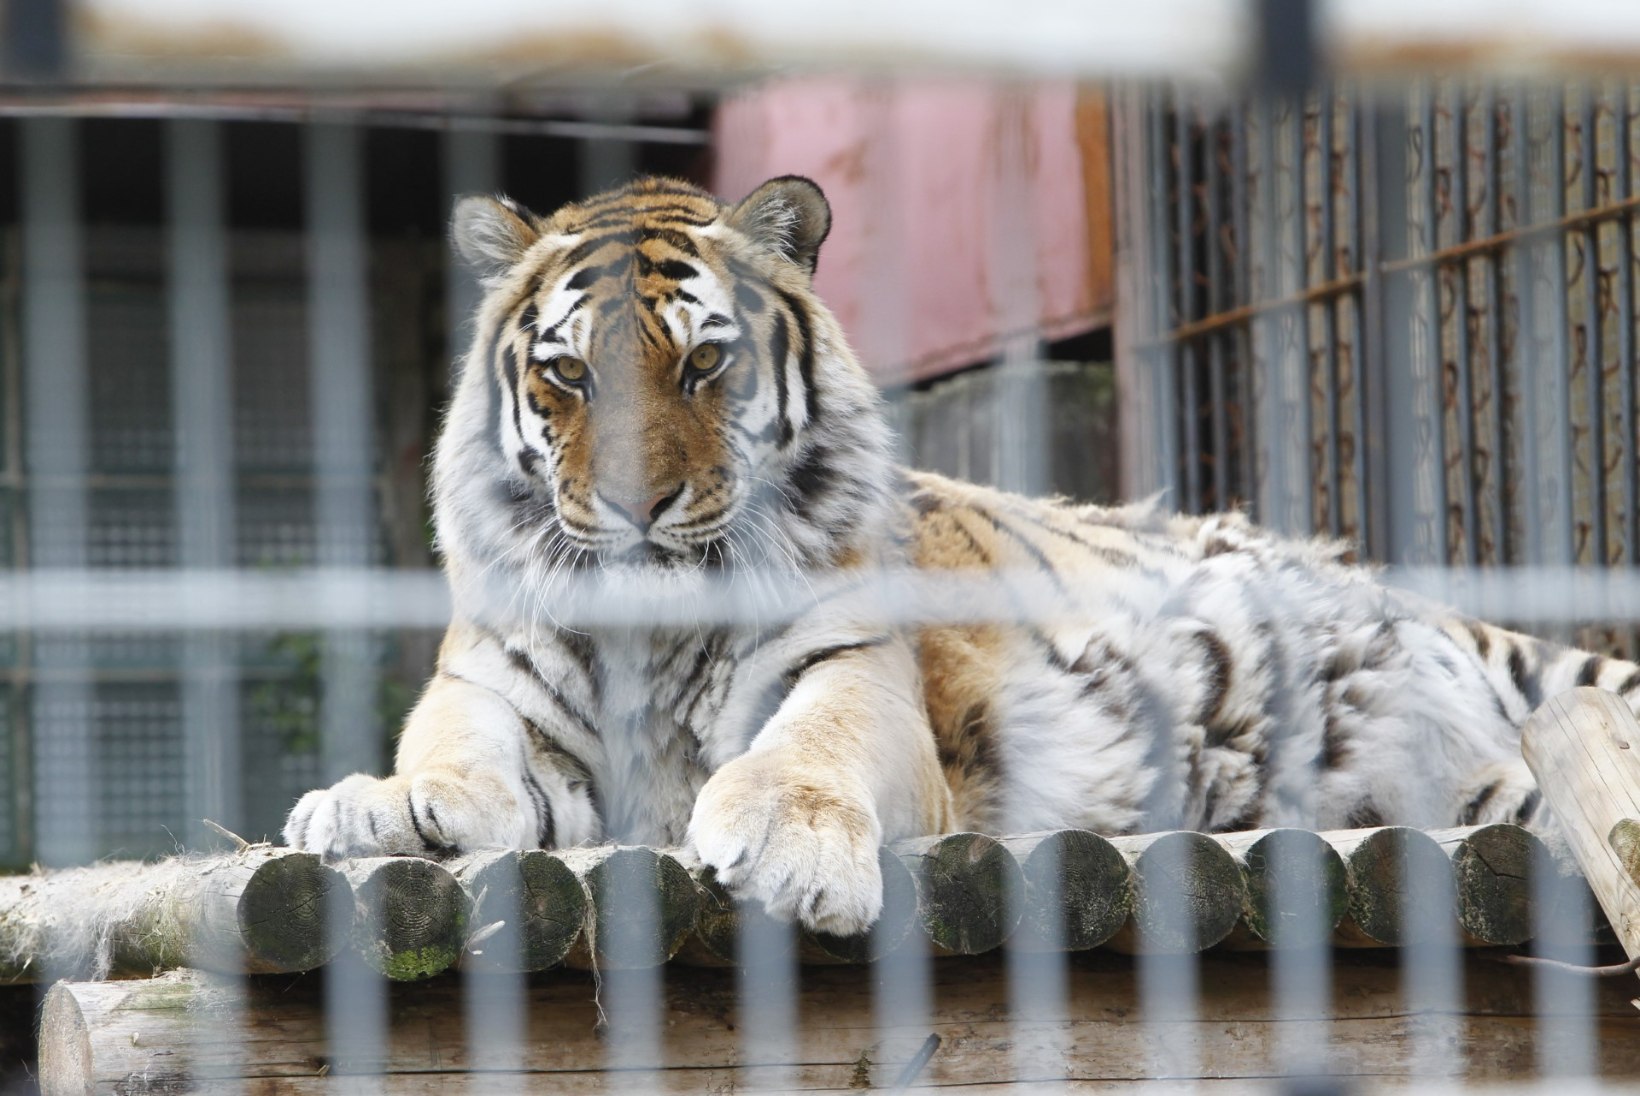 GALERII | Tiiger Pootsman sai tiigripäeva puhul verejäätist